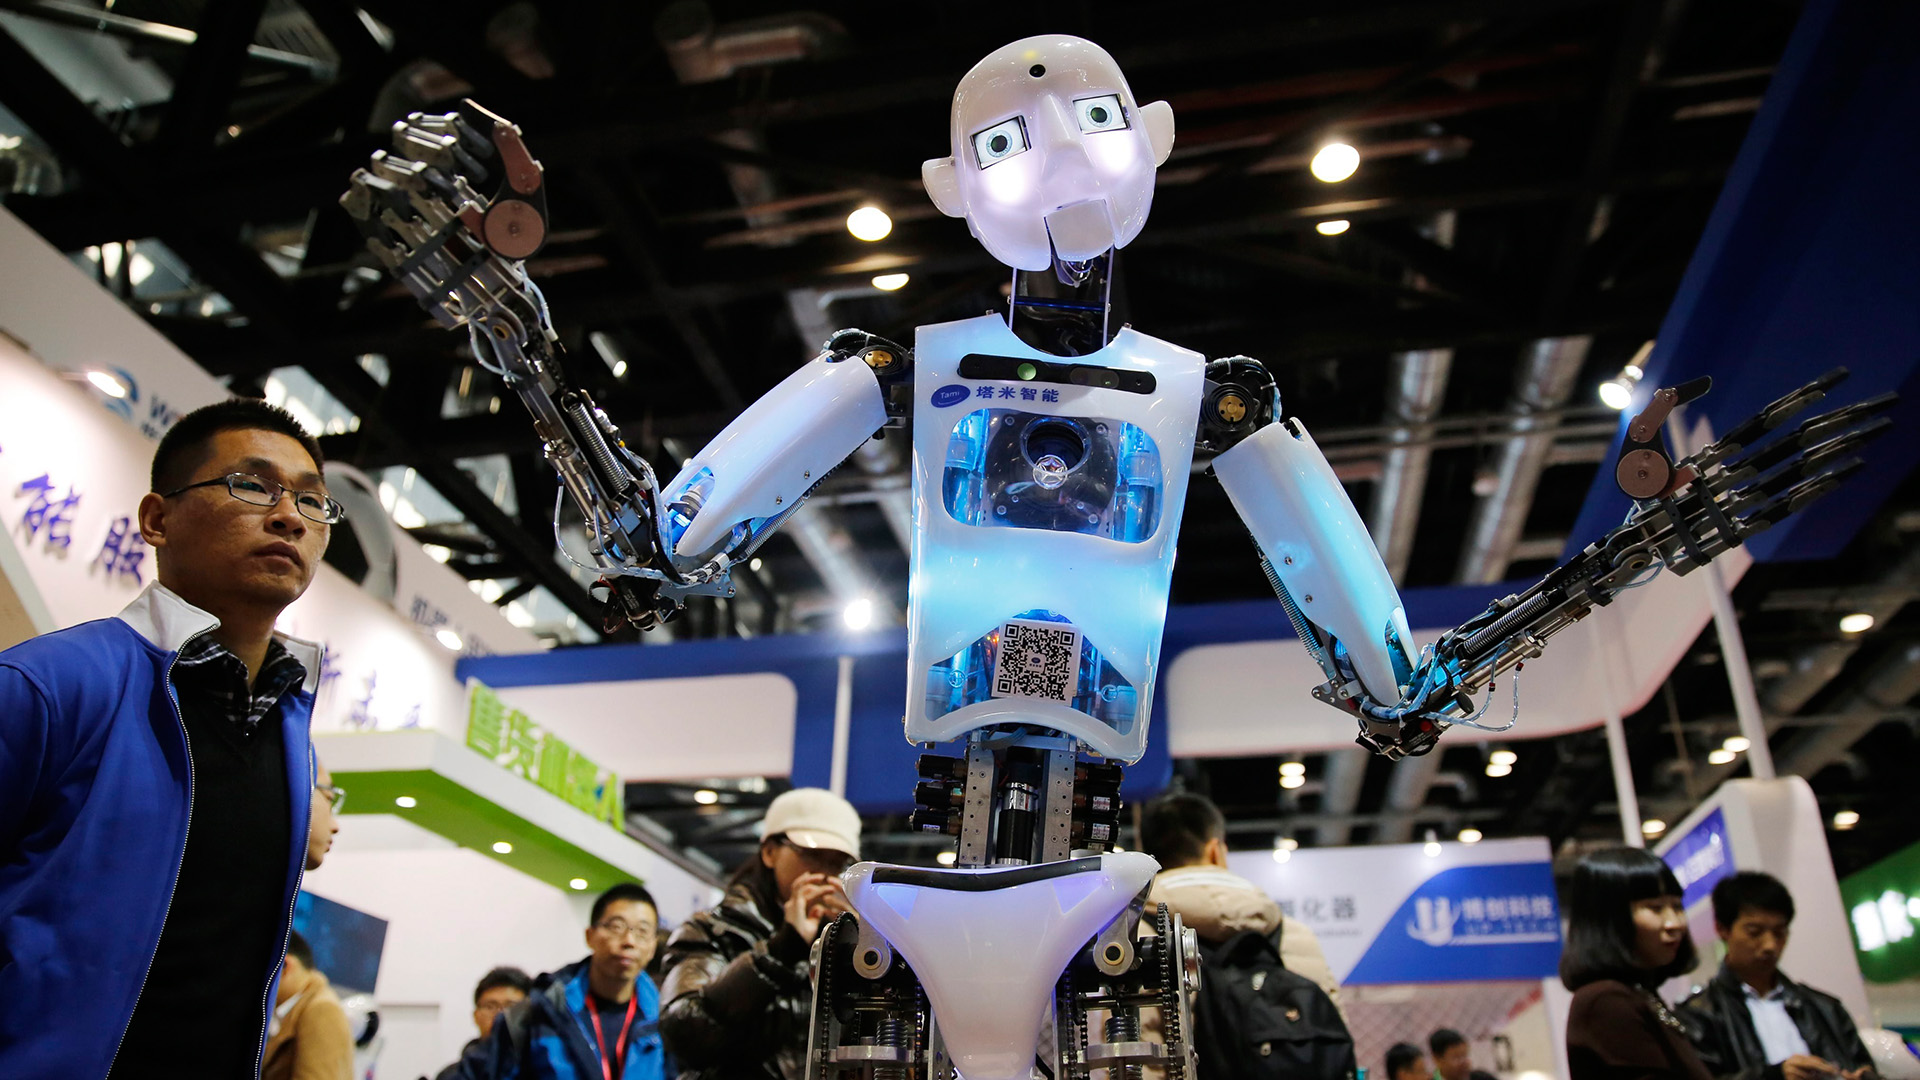 Робототехника и ии. Робот. Японские технологии. Роботы и робототехника. Робототехника Японии.